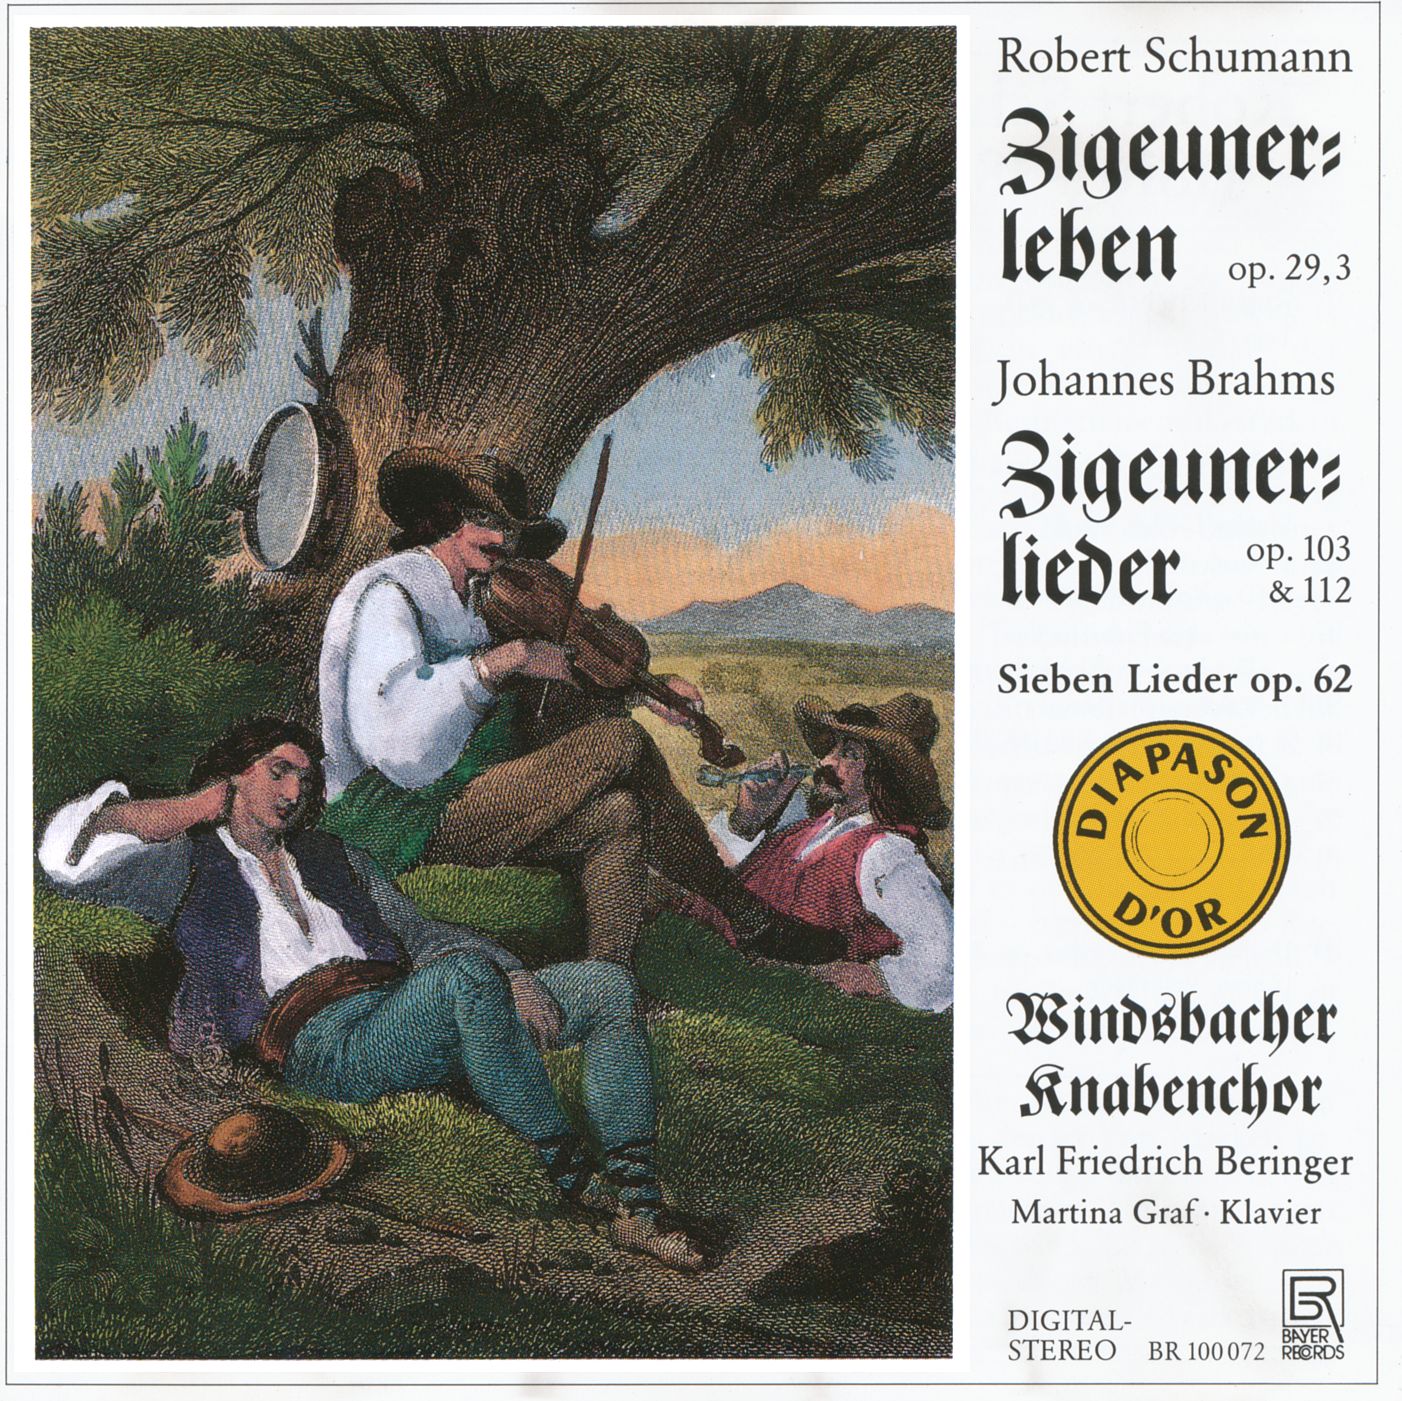 Robert Schumann / Johannes Brahms - Zigeunerlieder